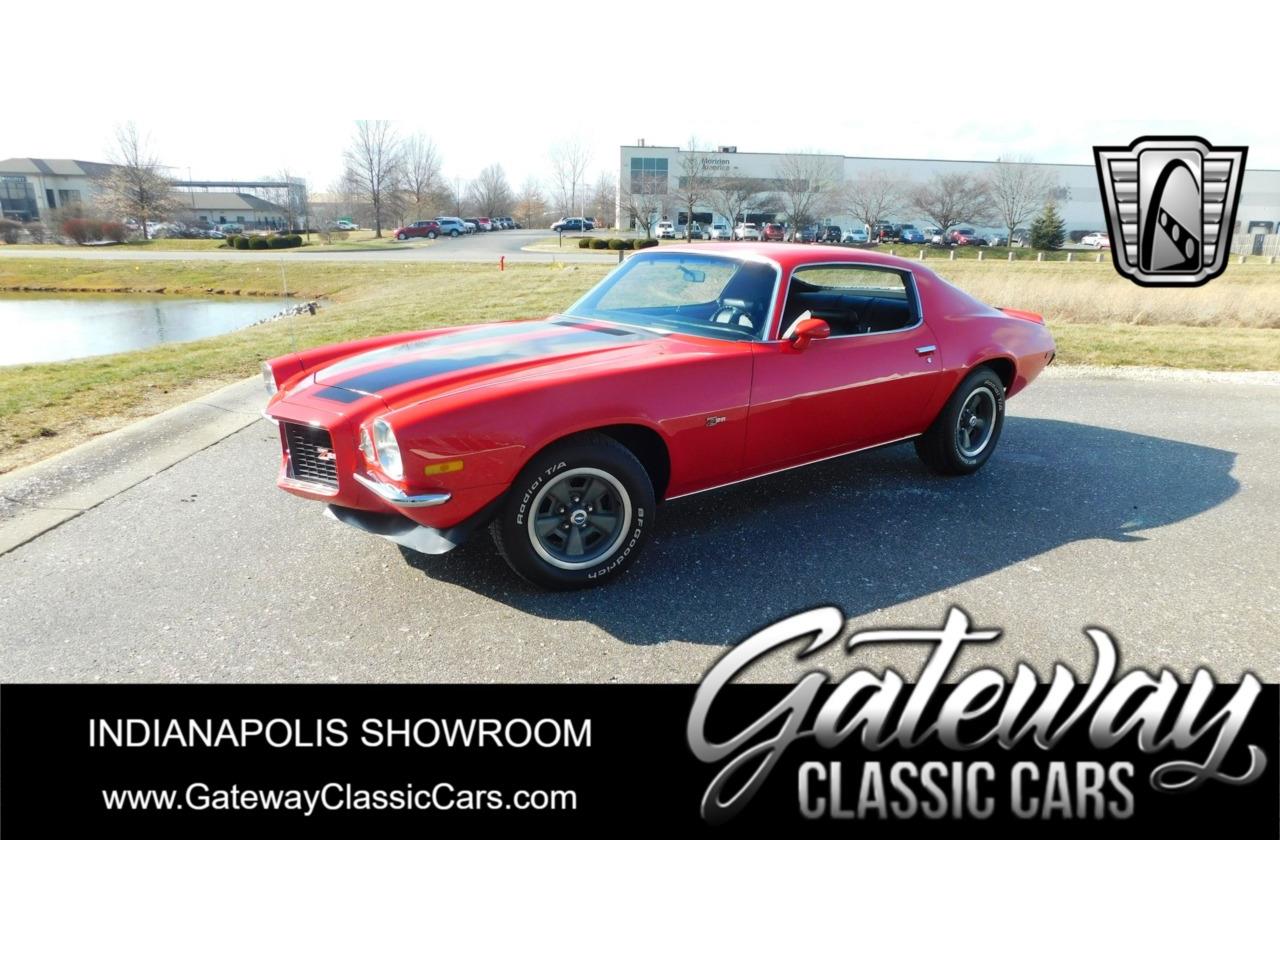 For Sale: 1970 Chevrolet Camaro in O'Fallon, Illinois for sale in O Fallon, IL